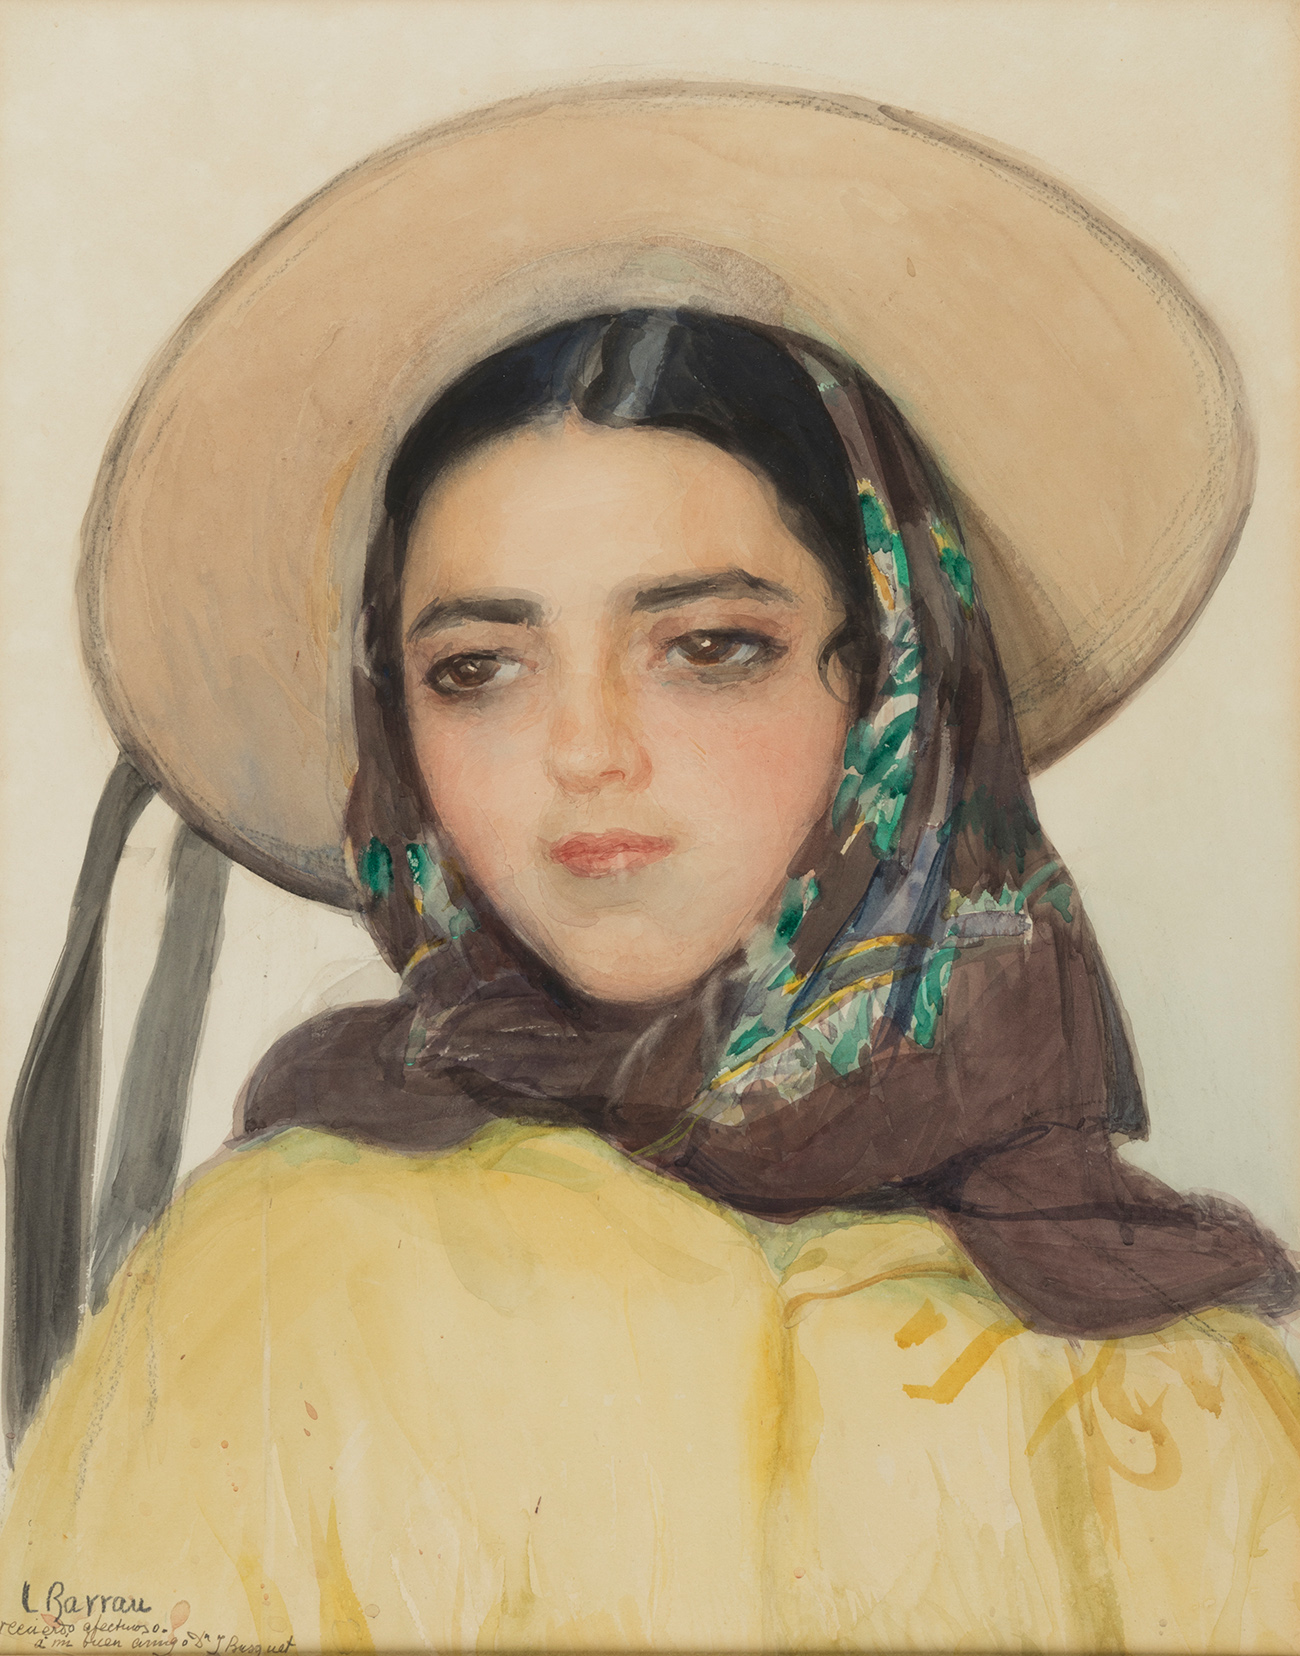 LAUREANO BARRAU BUÑOL (Barcelona, 1864 - Santa Eulària des Riu, Ibiza, 1957). "Noia Eivissenca"